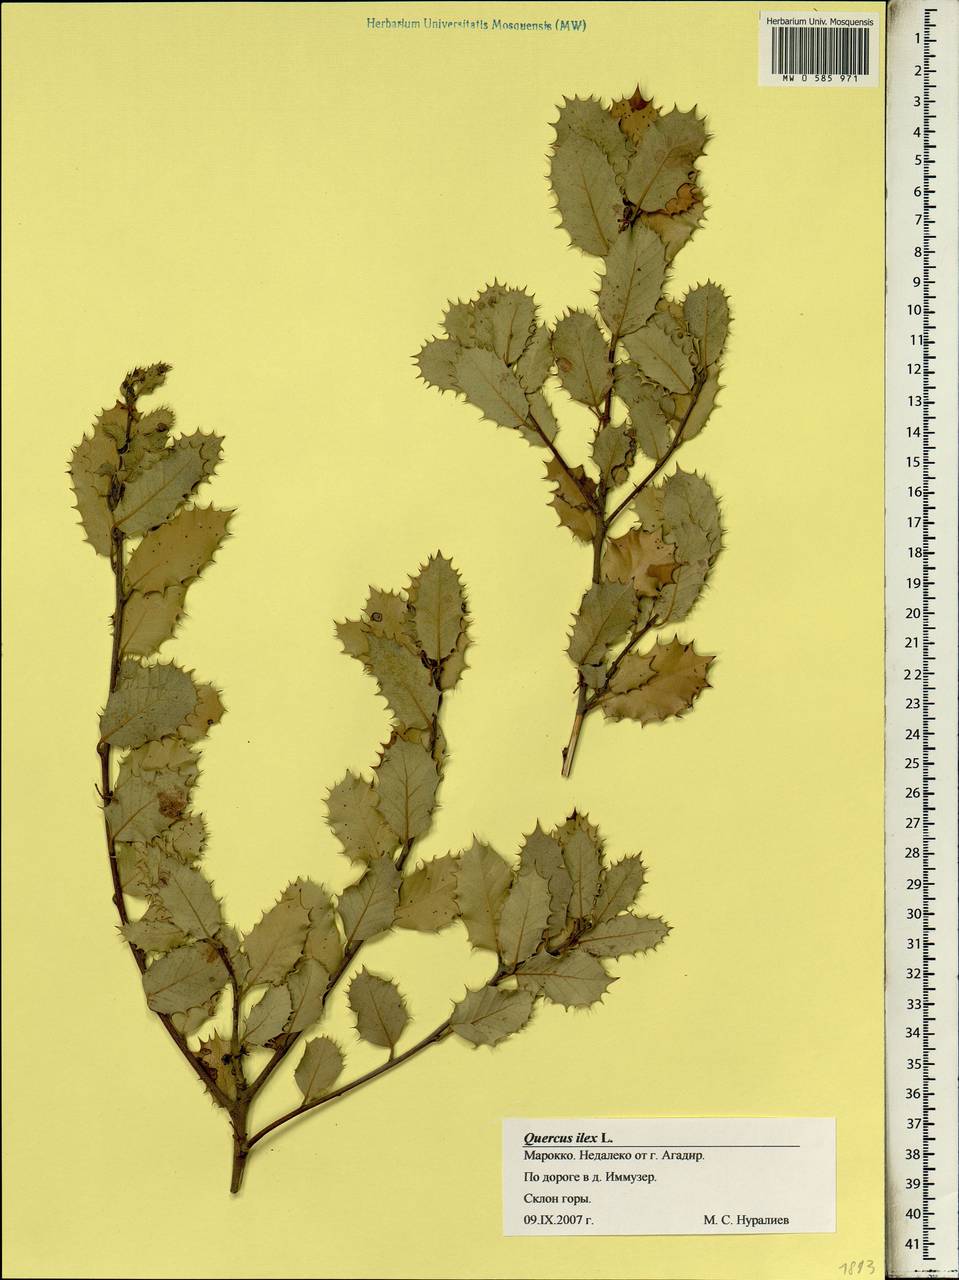 Quercus ilex L., Africa (AFR) (Morocco)